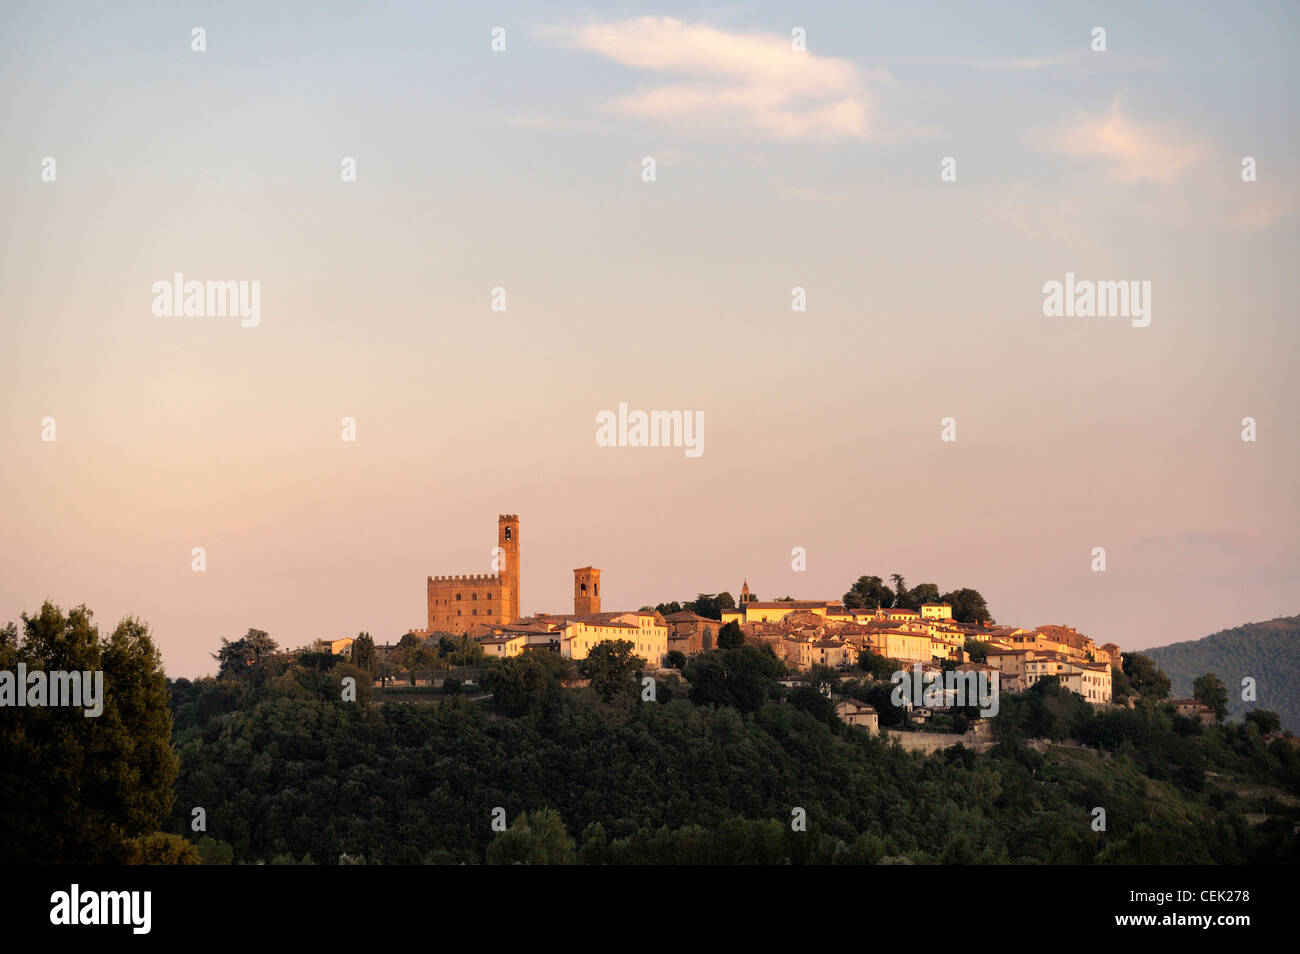 Le château médiéval et hill ville de Cortona, Toscane, Italie. Soirée d'été Banque D'Images